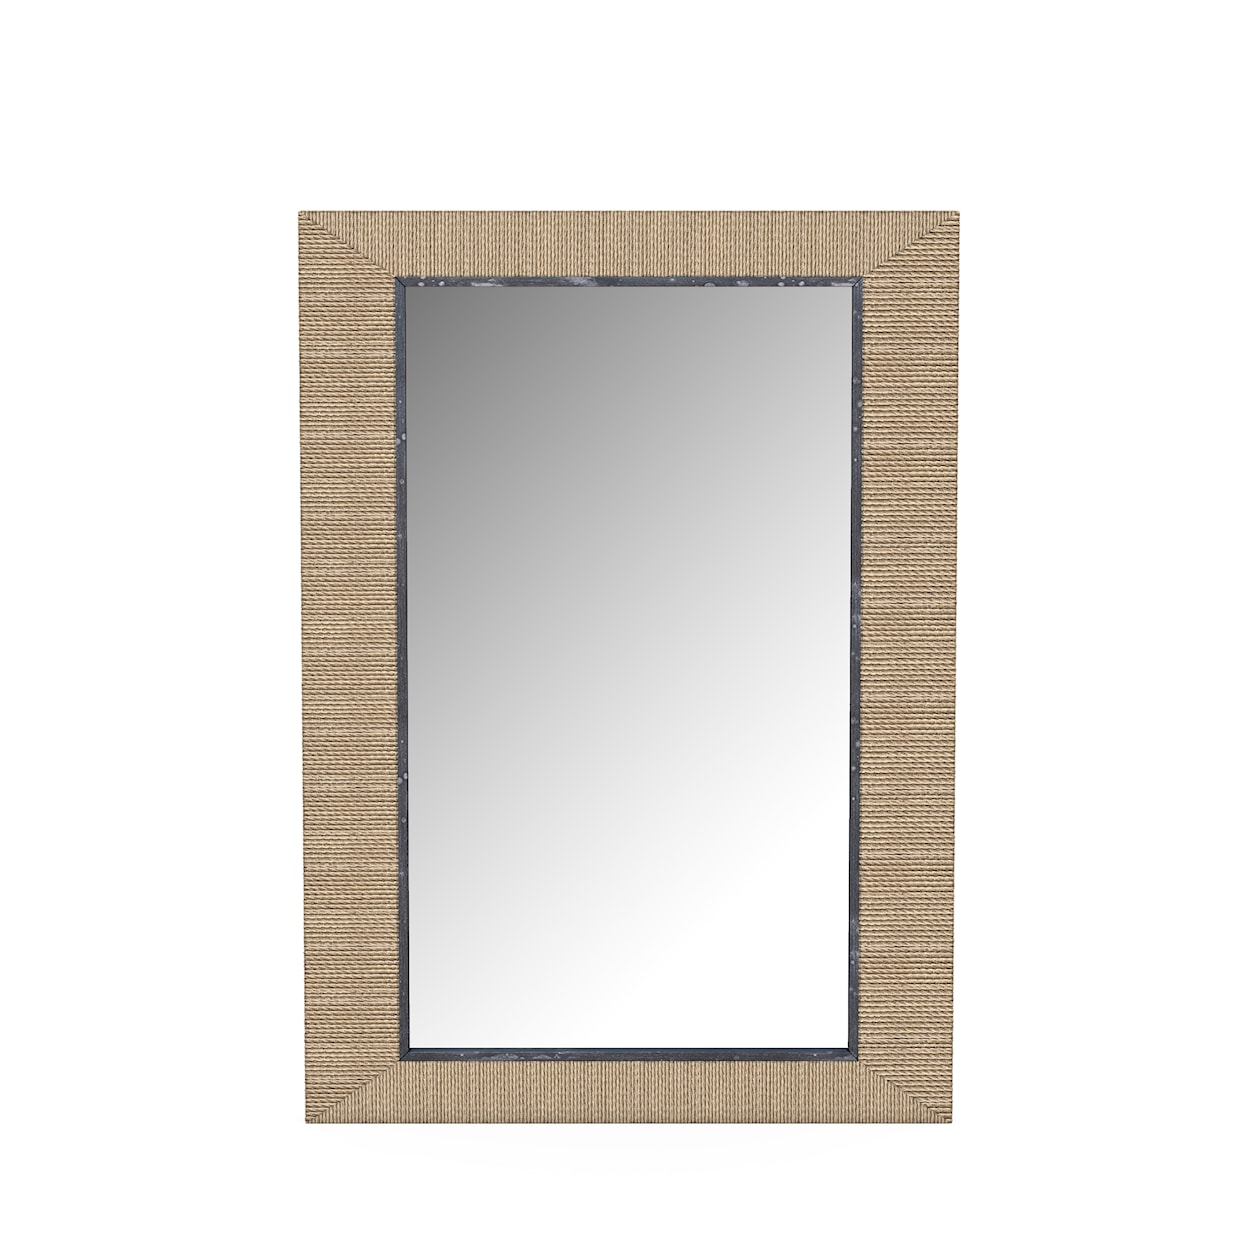 A.R.T. Furniture Inc Frame Wall Mirror 